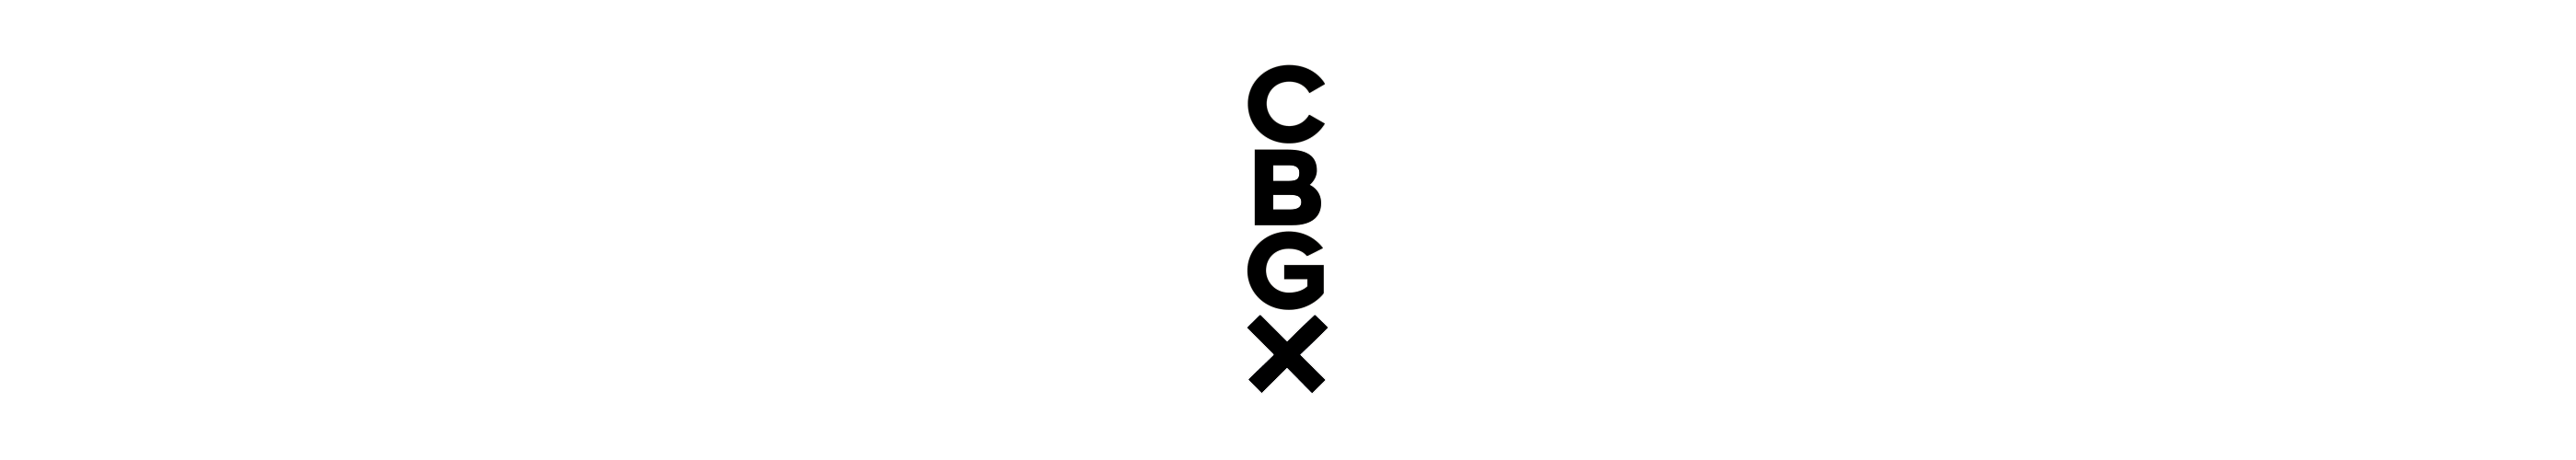 CBGX